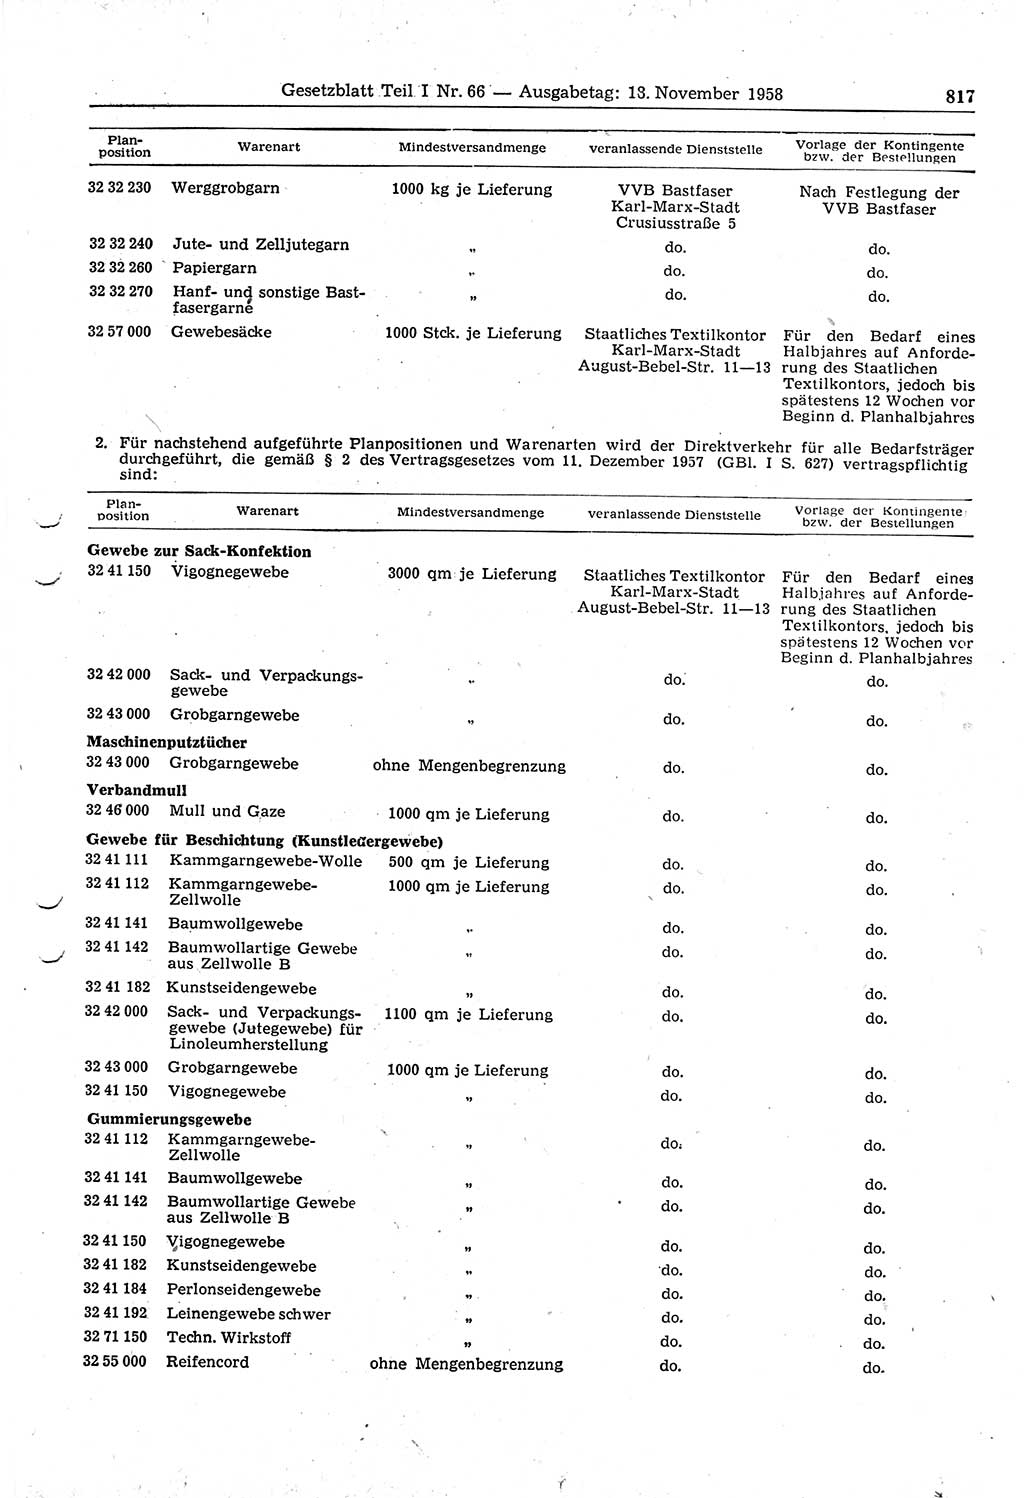 Gesetzblatt (GBl.) der Deutschen Demokratischen Republik (DDR) Teil Ⅰ 1958, Seite 817 (GBl. DDR Ⅰ 1958, S. 817)